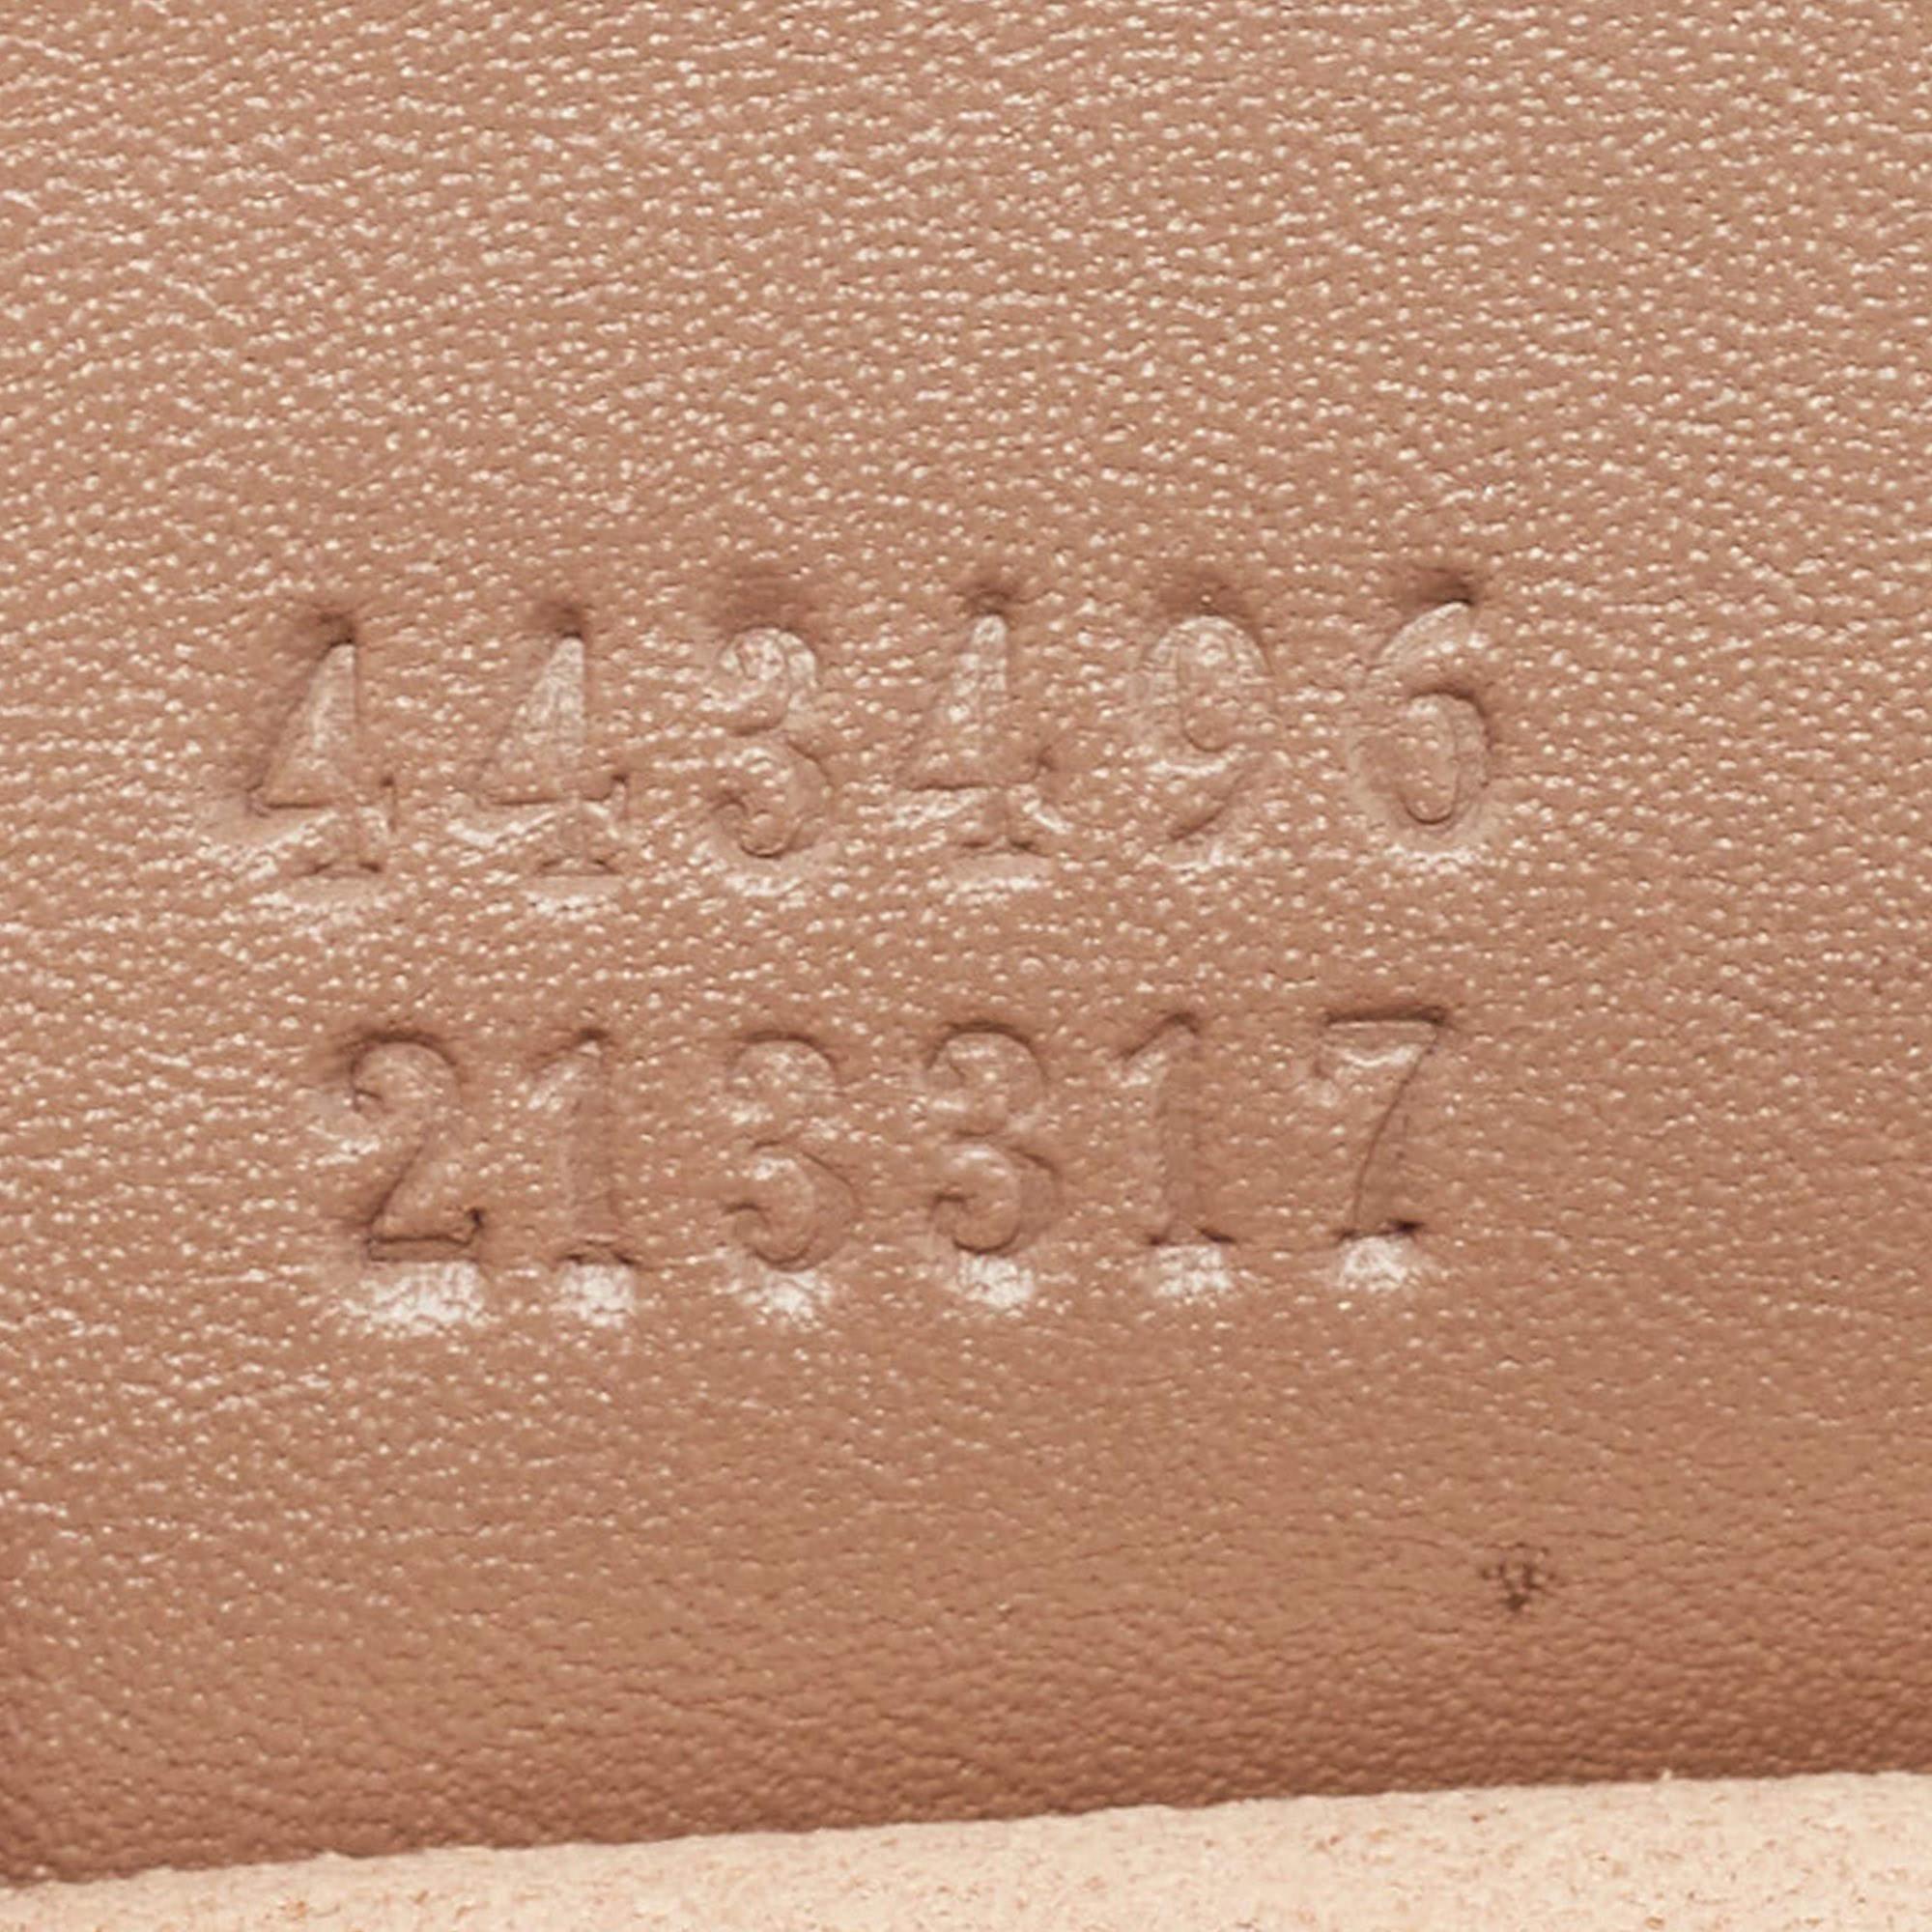 Gucci Beige Matelassé Leather Medium GG Marmont Shoulder Bag 1